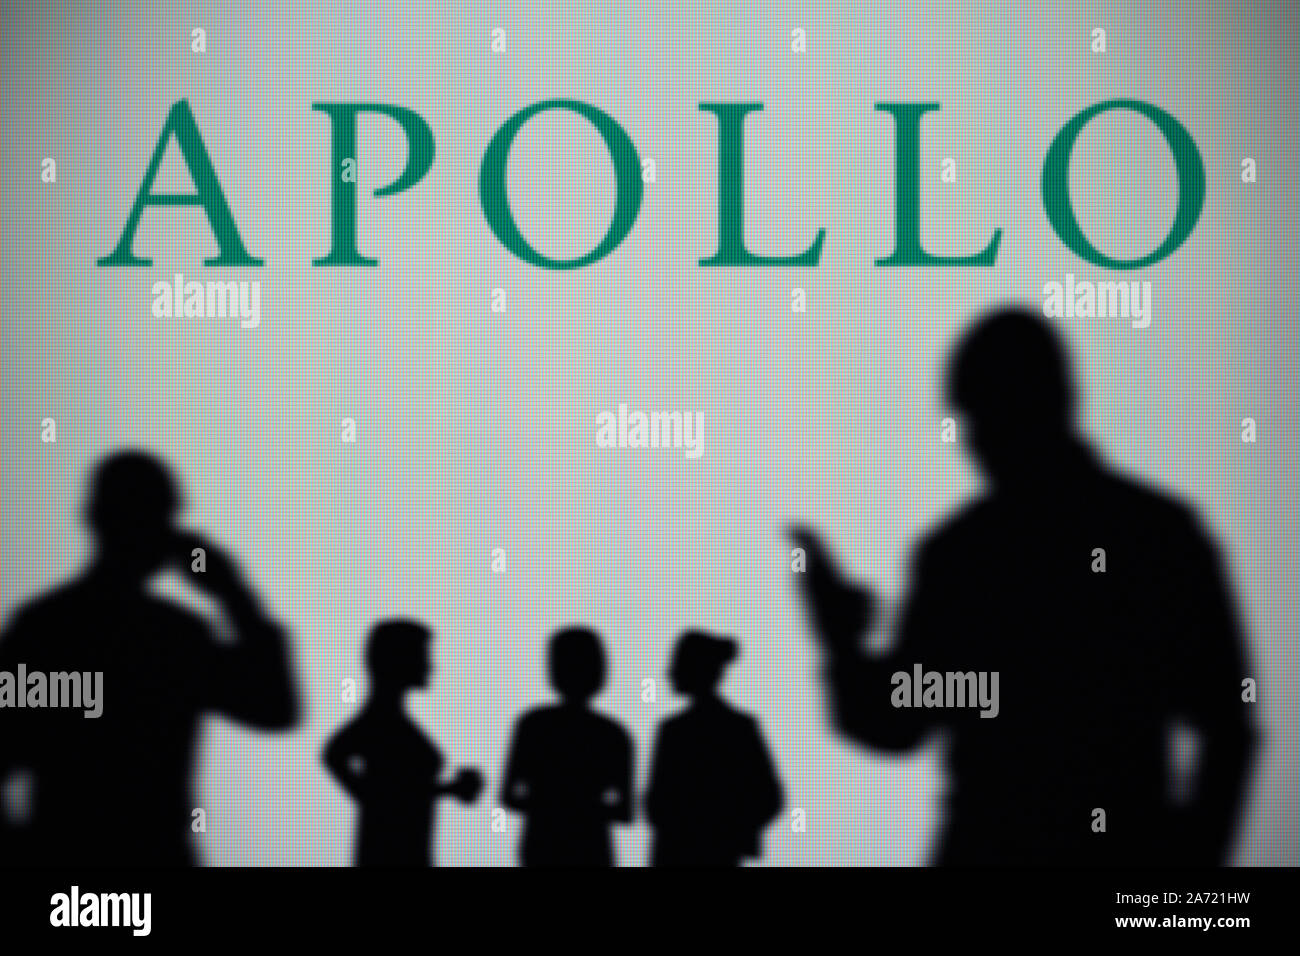 L'Apollo Global Management logo è visibile su uno schermo a LED in background mentre si profila una persona utilizza uno smartphone (solo uso editoriale) Foto Stock